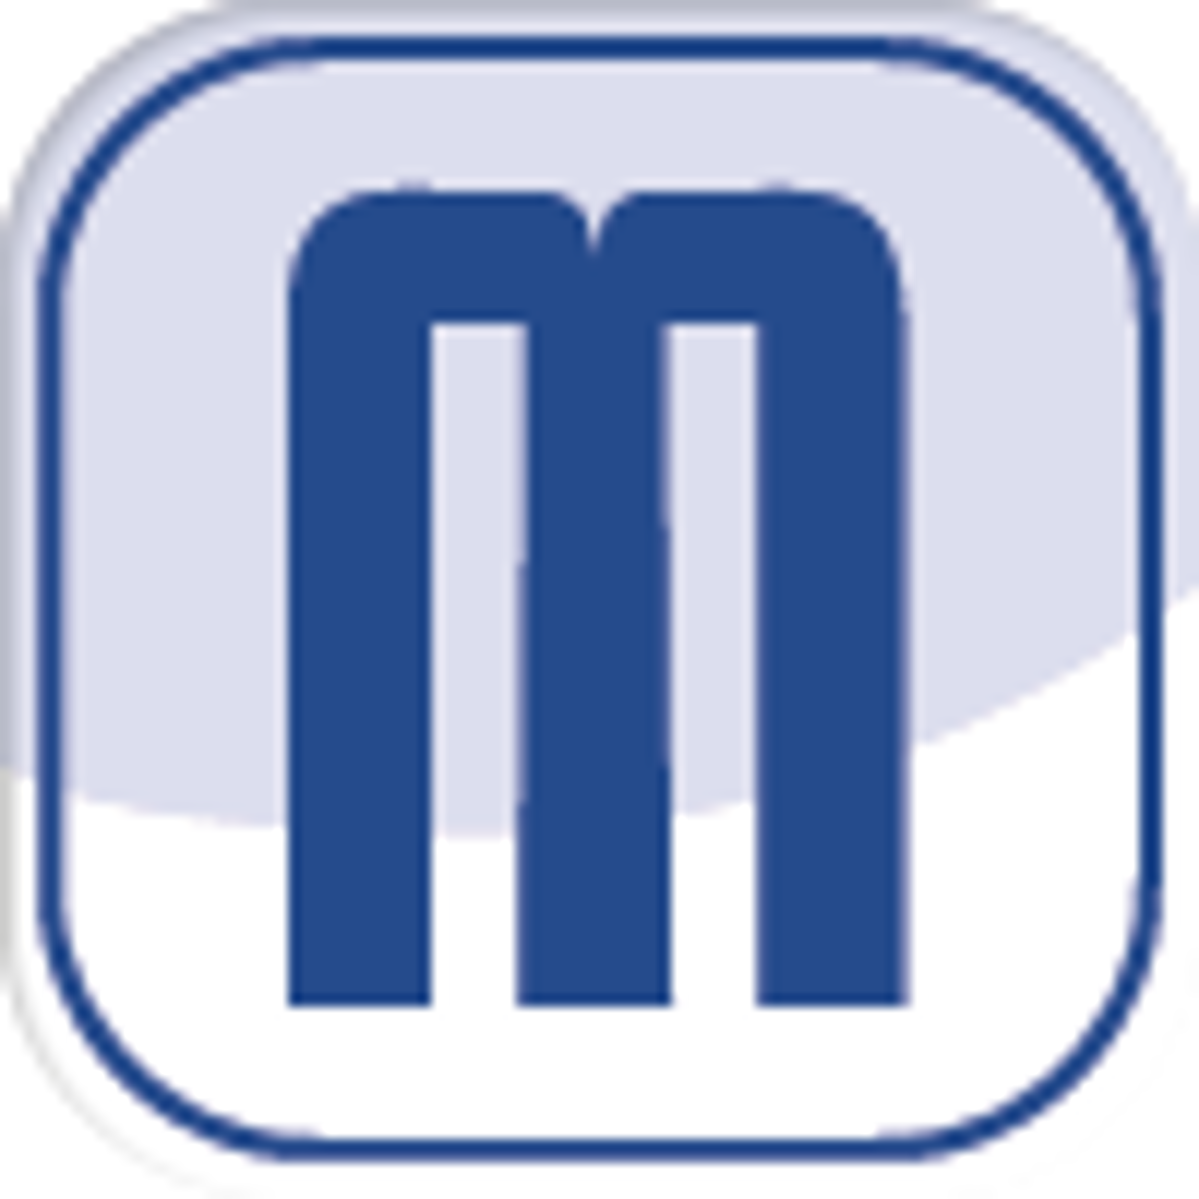 Das Logo von "Maerker", ein weißes Quadrat mit einem blaues "m" darauf.